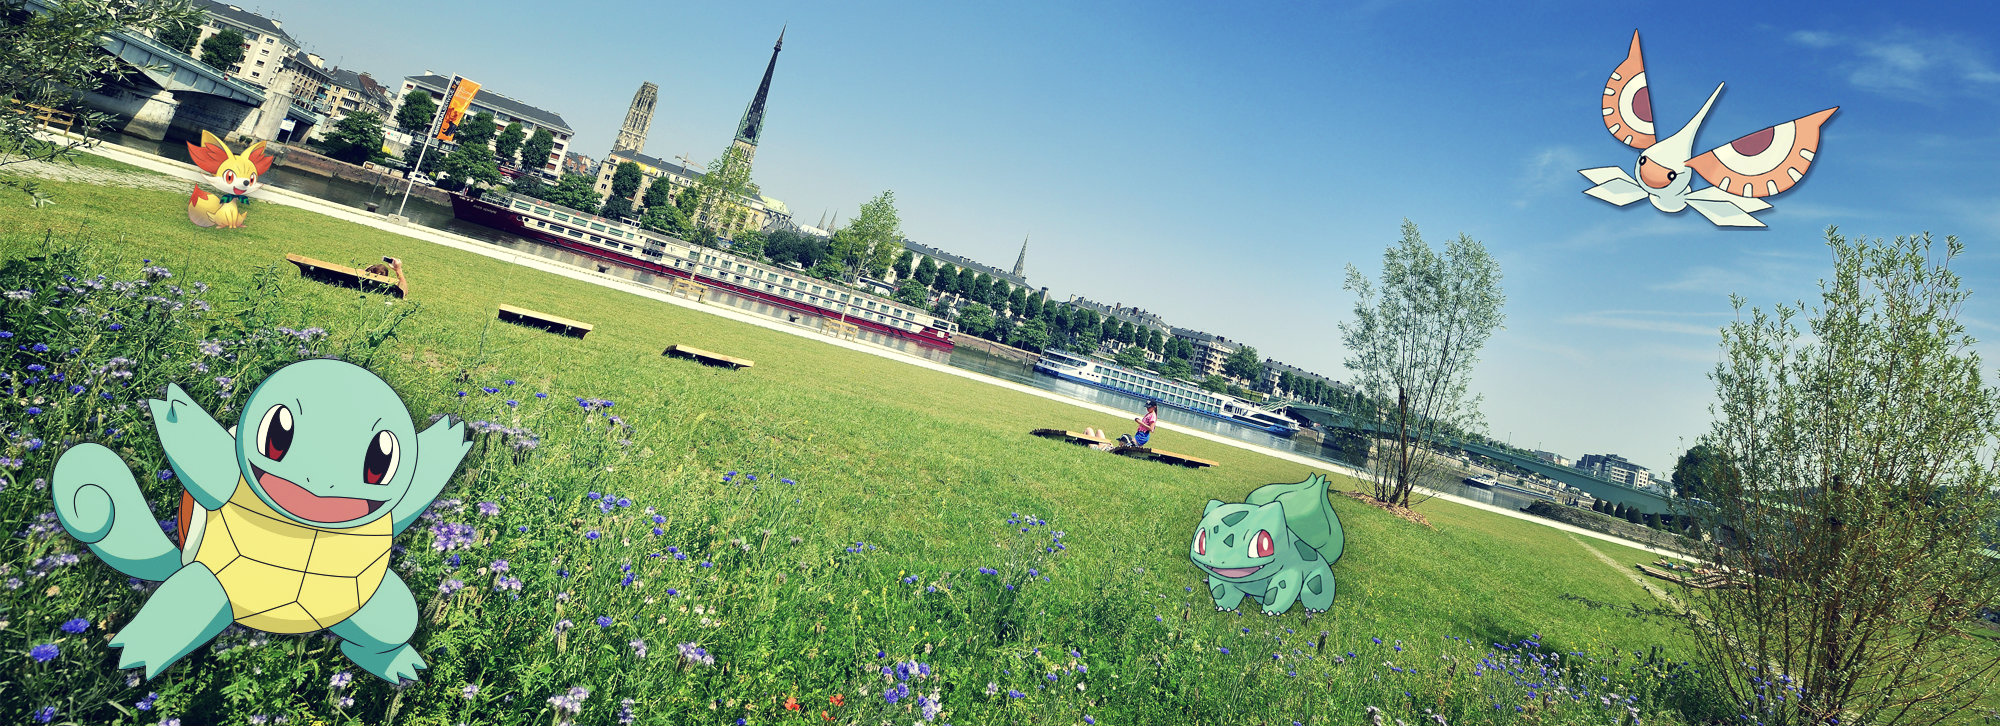 L'Office de Tourisme de Rouen invite les joueurs à une grande chasse aux Pokémon (c) Office de tourisme de Rouen